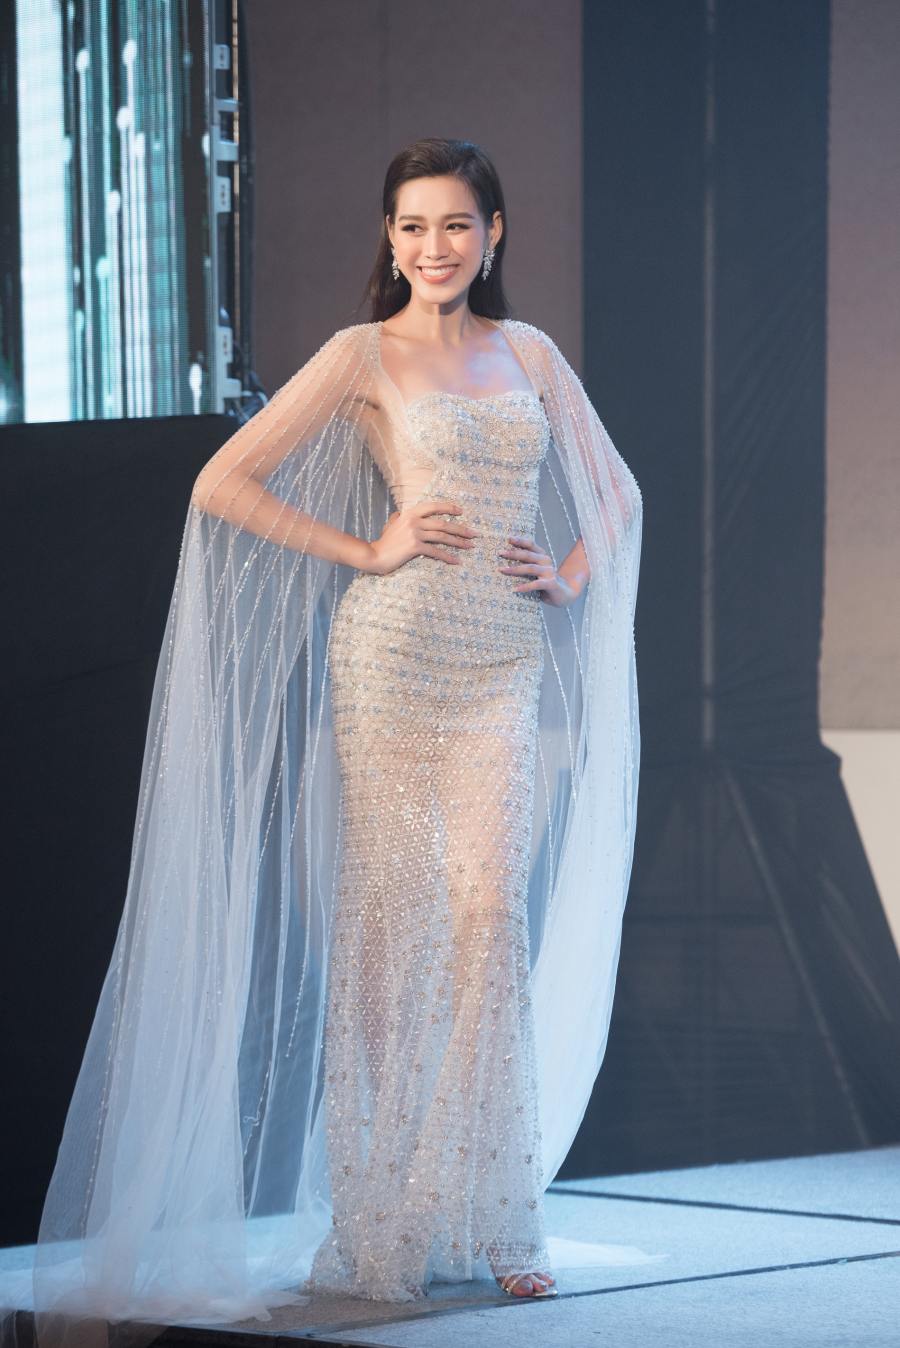 Hoa hậu Đỗ Thị Hà khoe sắc vóc quyến rũ, nhận sash thi đấu quốc tế từ Lương Thuỳ Linh